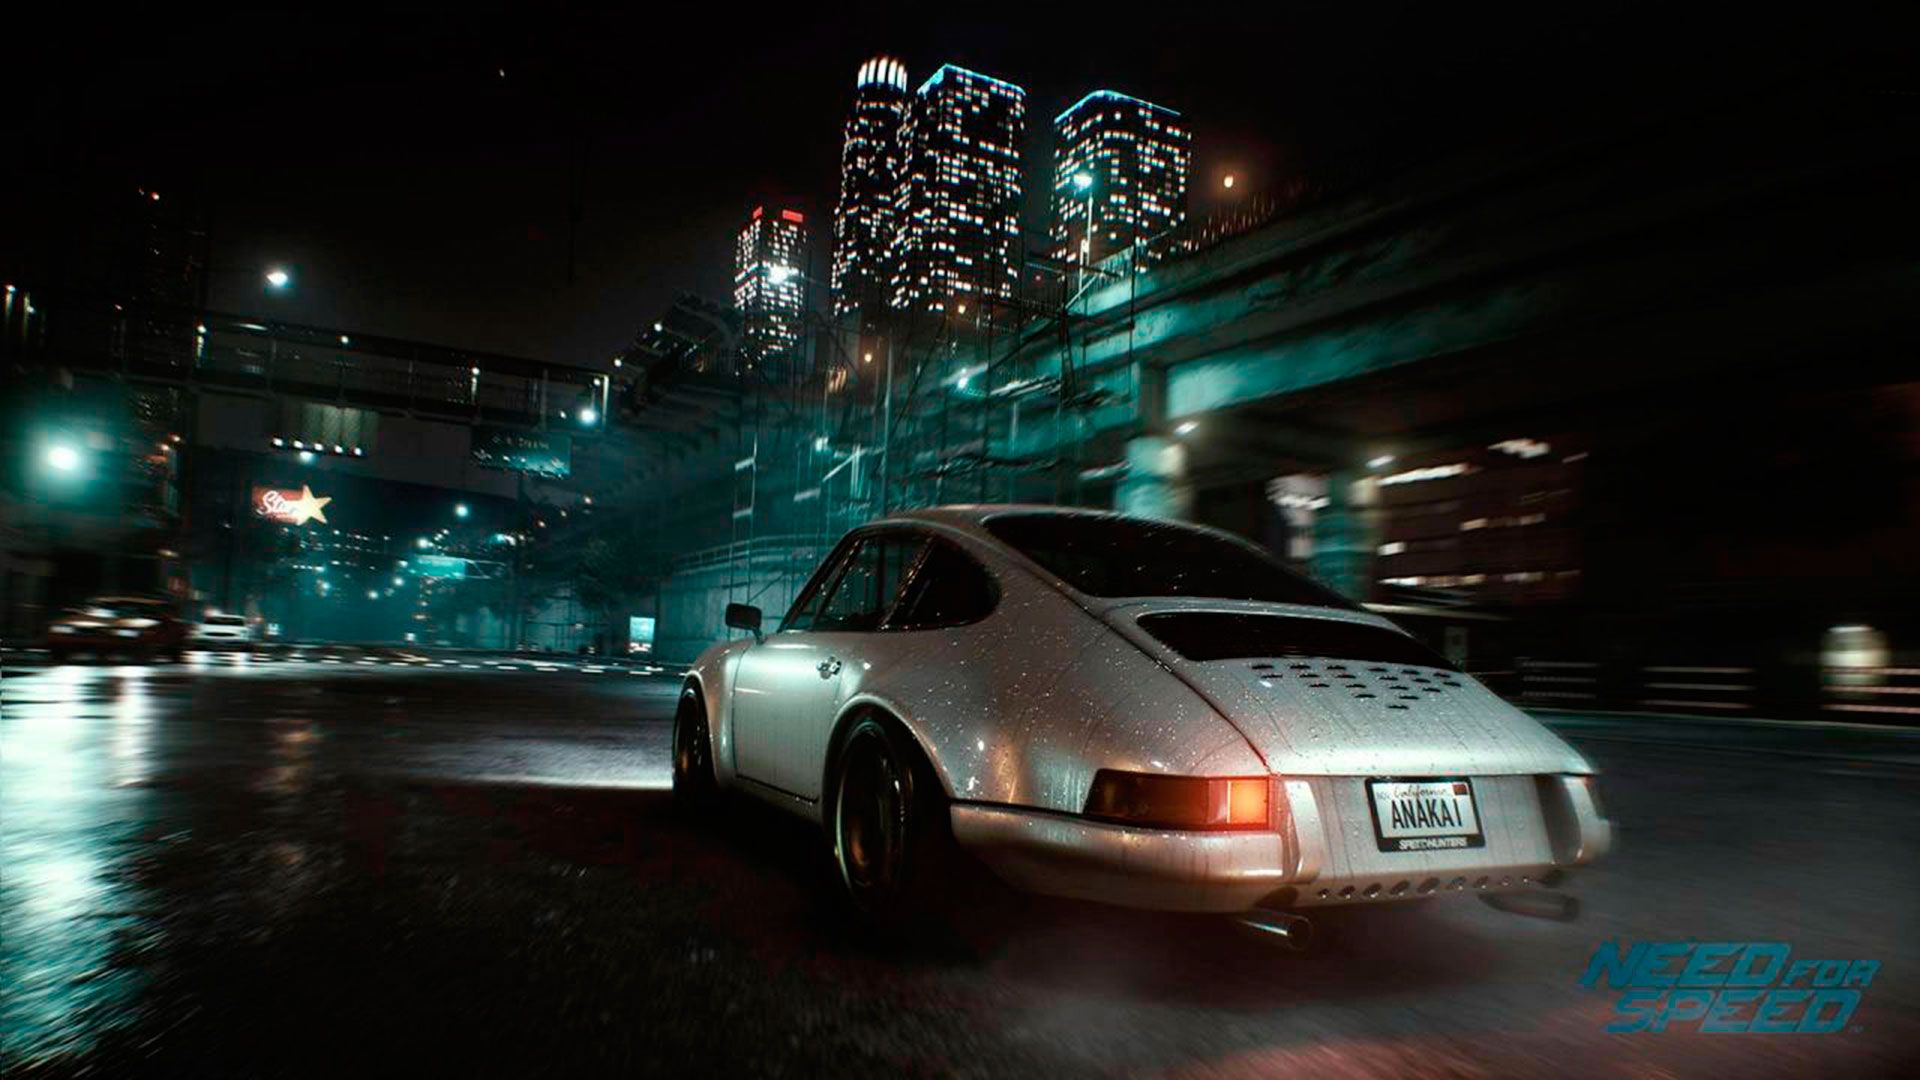 Нид фор спид пс. Нид фор СПИД 2015. Need for Speed (игра, 2015). NFS 2015 ps4. Need for Speed 2015 Xbox one.